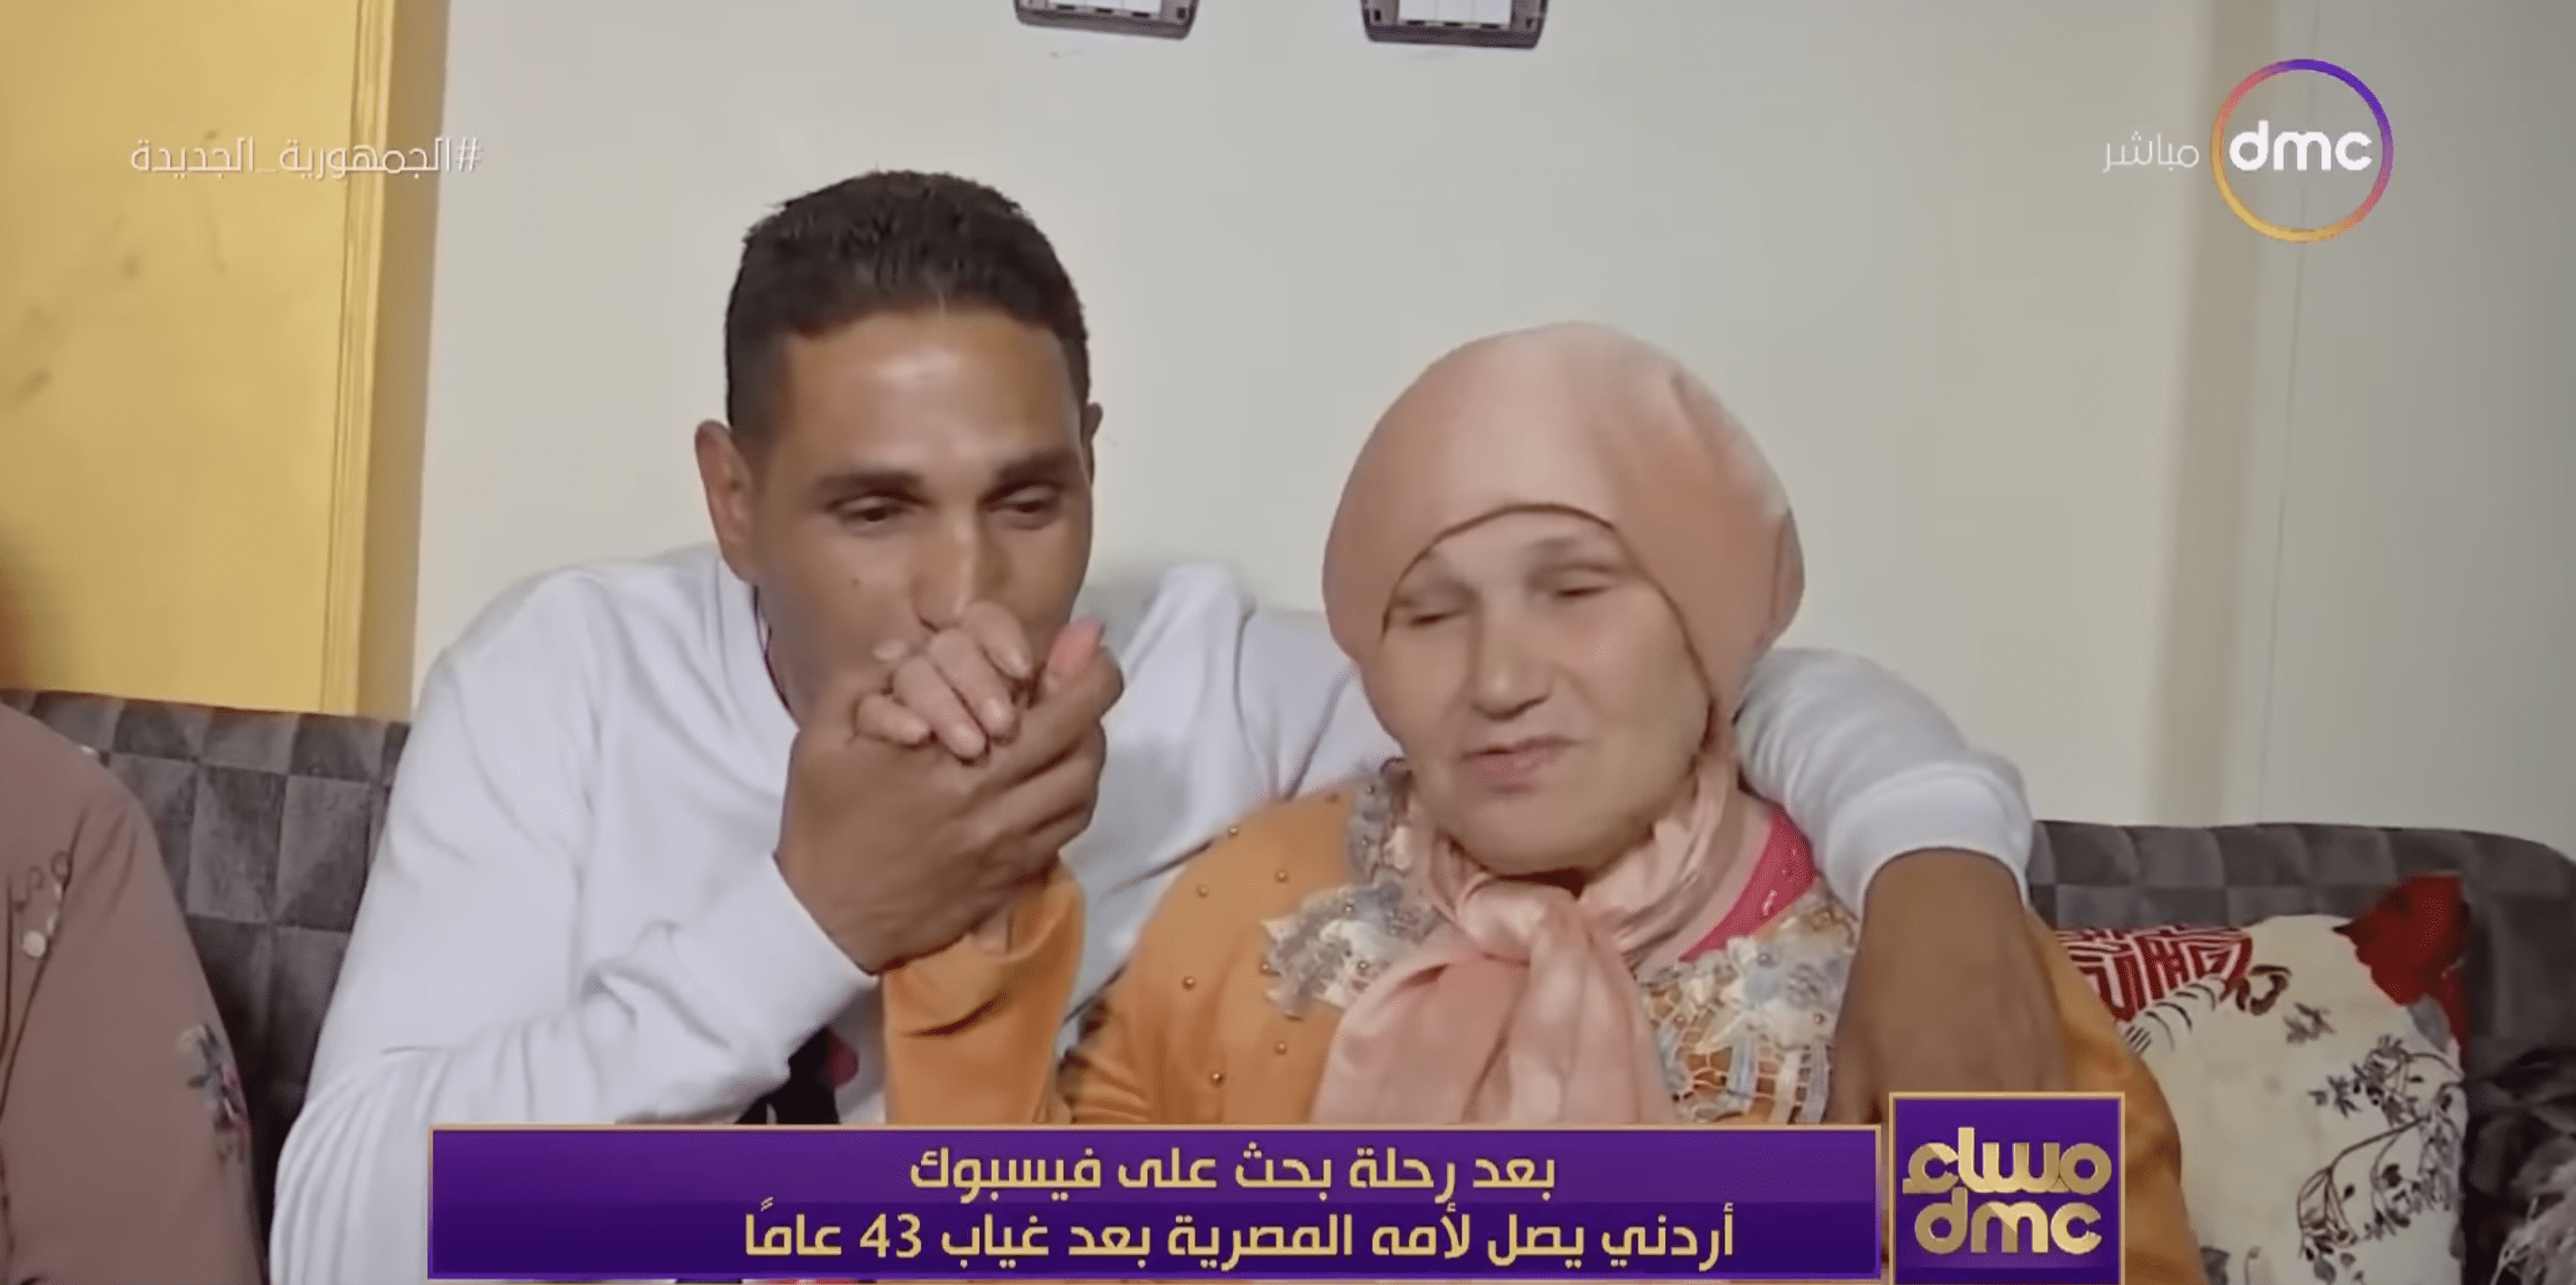 Wissam Mohamed planta un beso en la mano de su madre. | Foto: YouTube.com/dmc